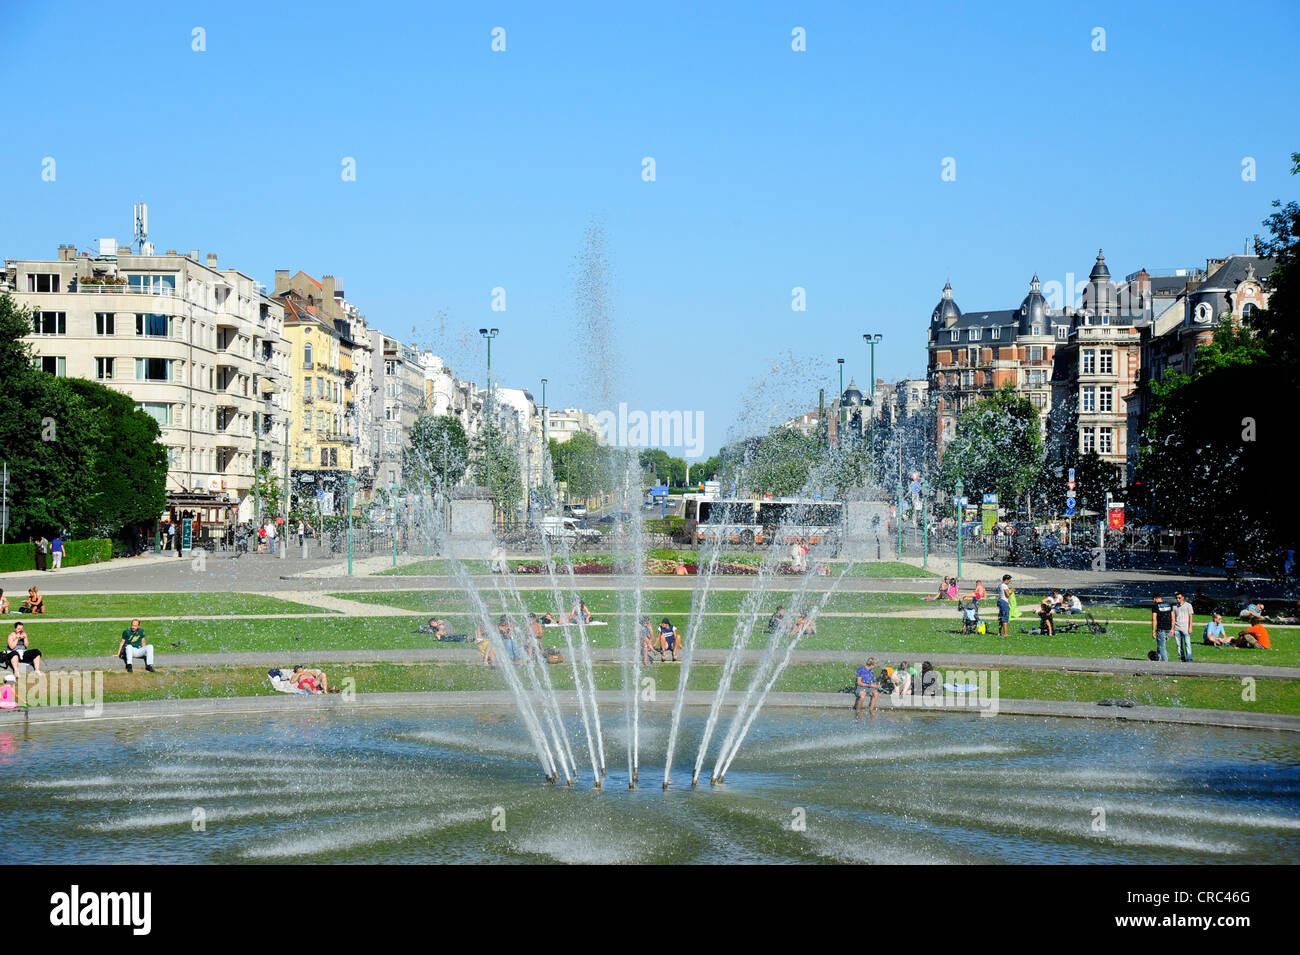 Fountain in Jubelpark, Parc du Cinquantenaire, Brussels, Belgium, Benelux, Europe Stock Photo